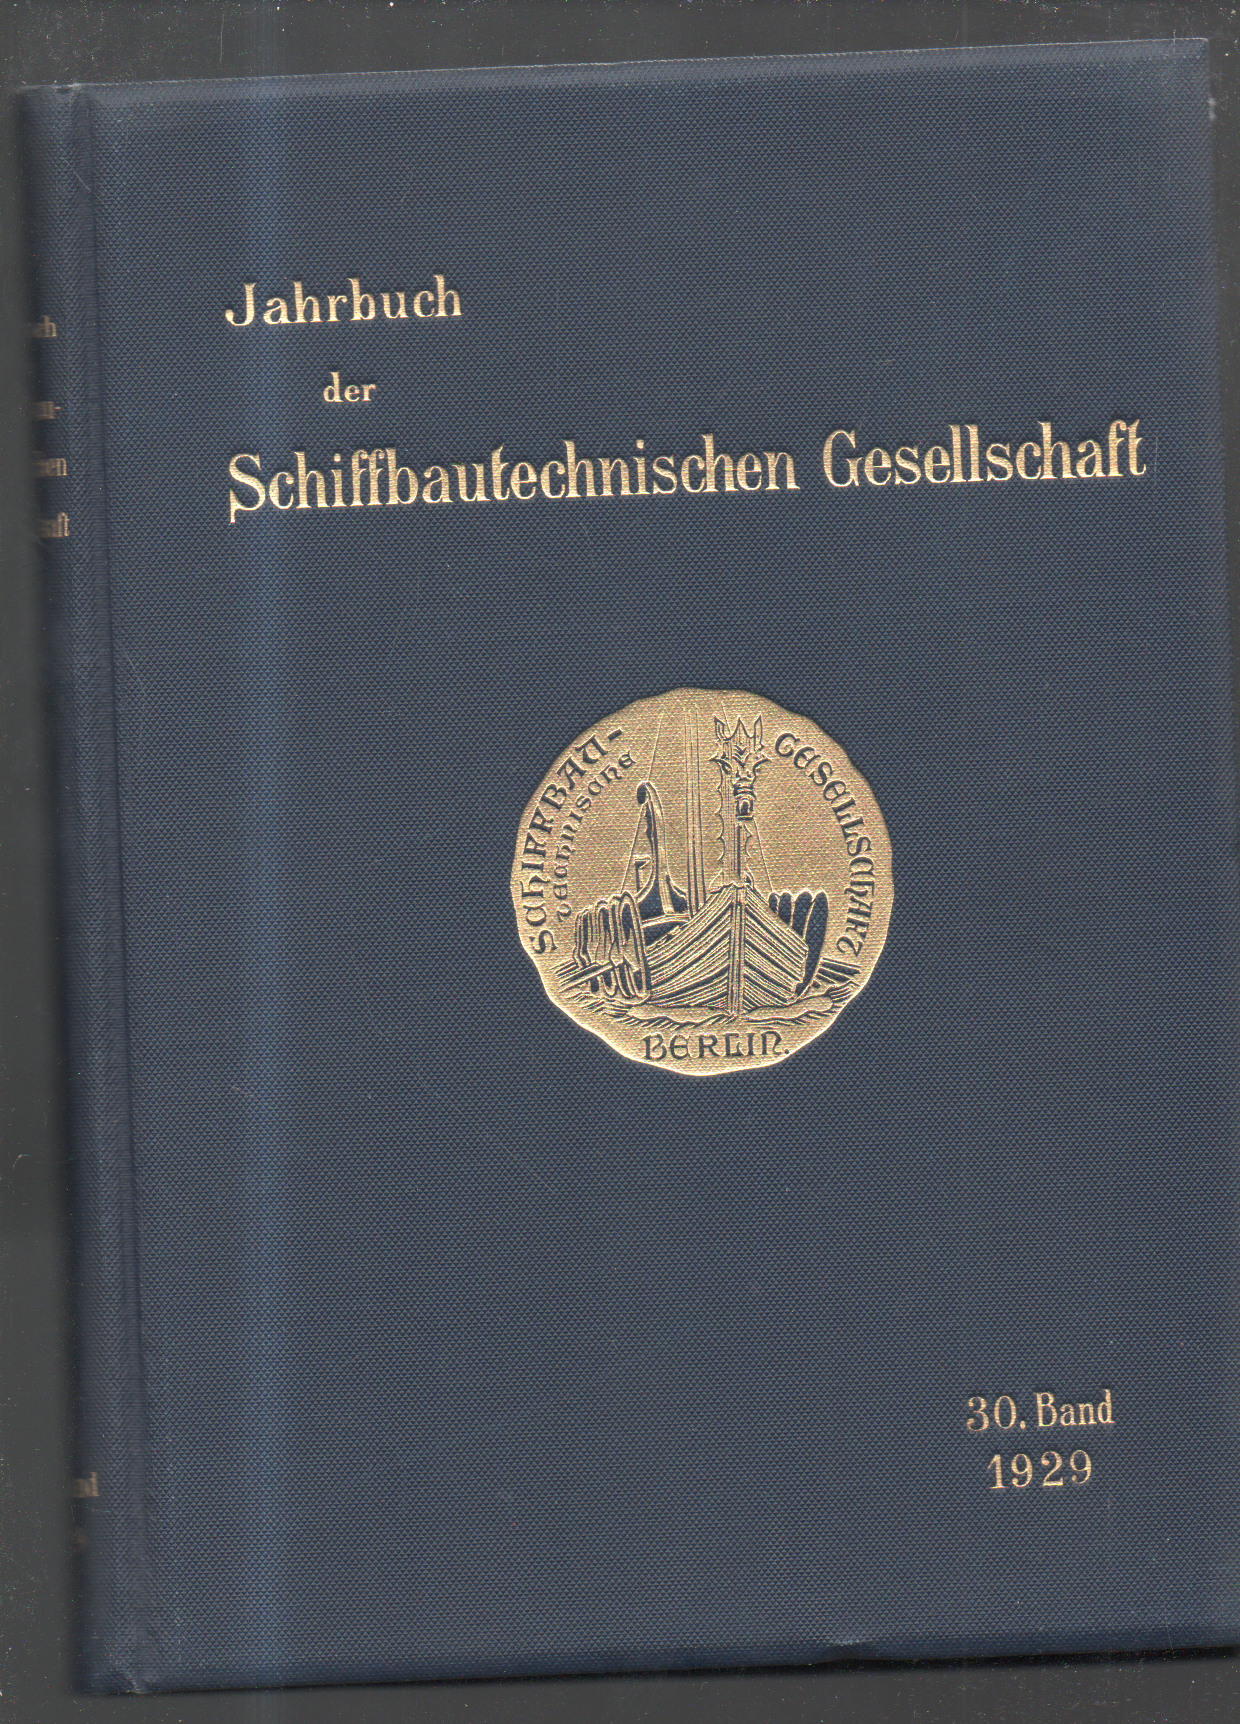 (87166) Jahrbuch der Schiffsbautechnische Gesellschaft, jajko wytłaczane złotem-nischen Gesellschaft, goldgeprägter Ei